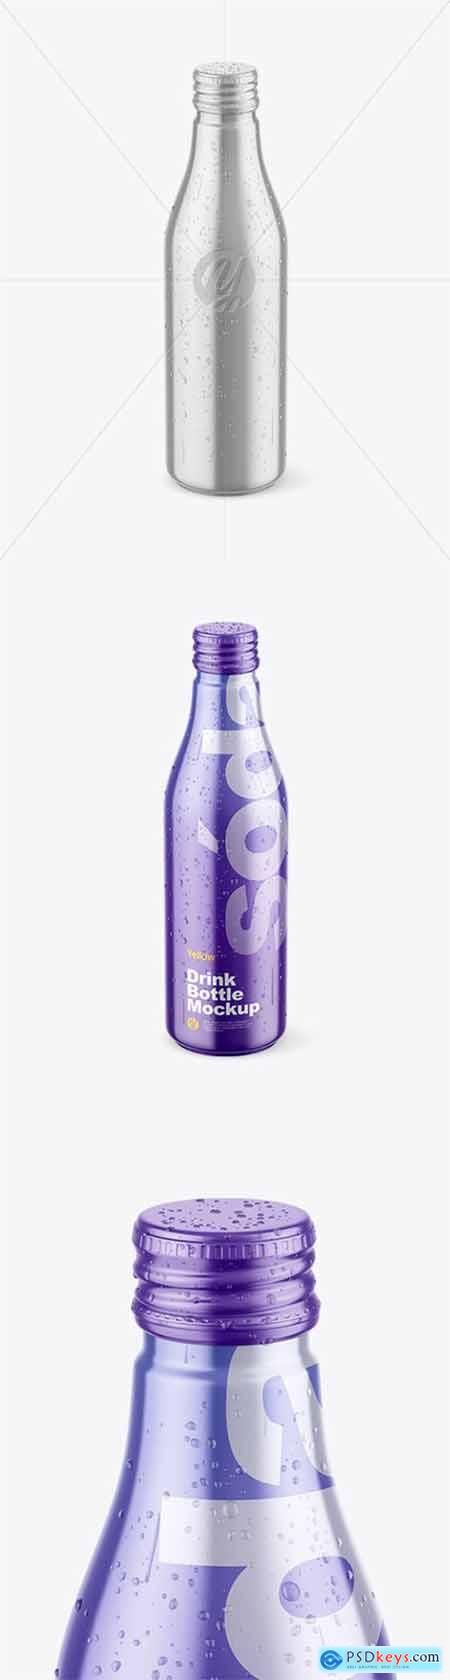 Metallic Drink Bottle w- Drops Mockup 78314